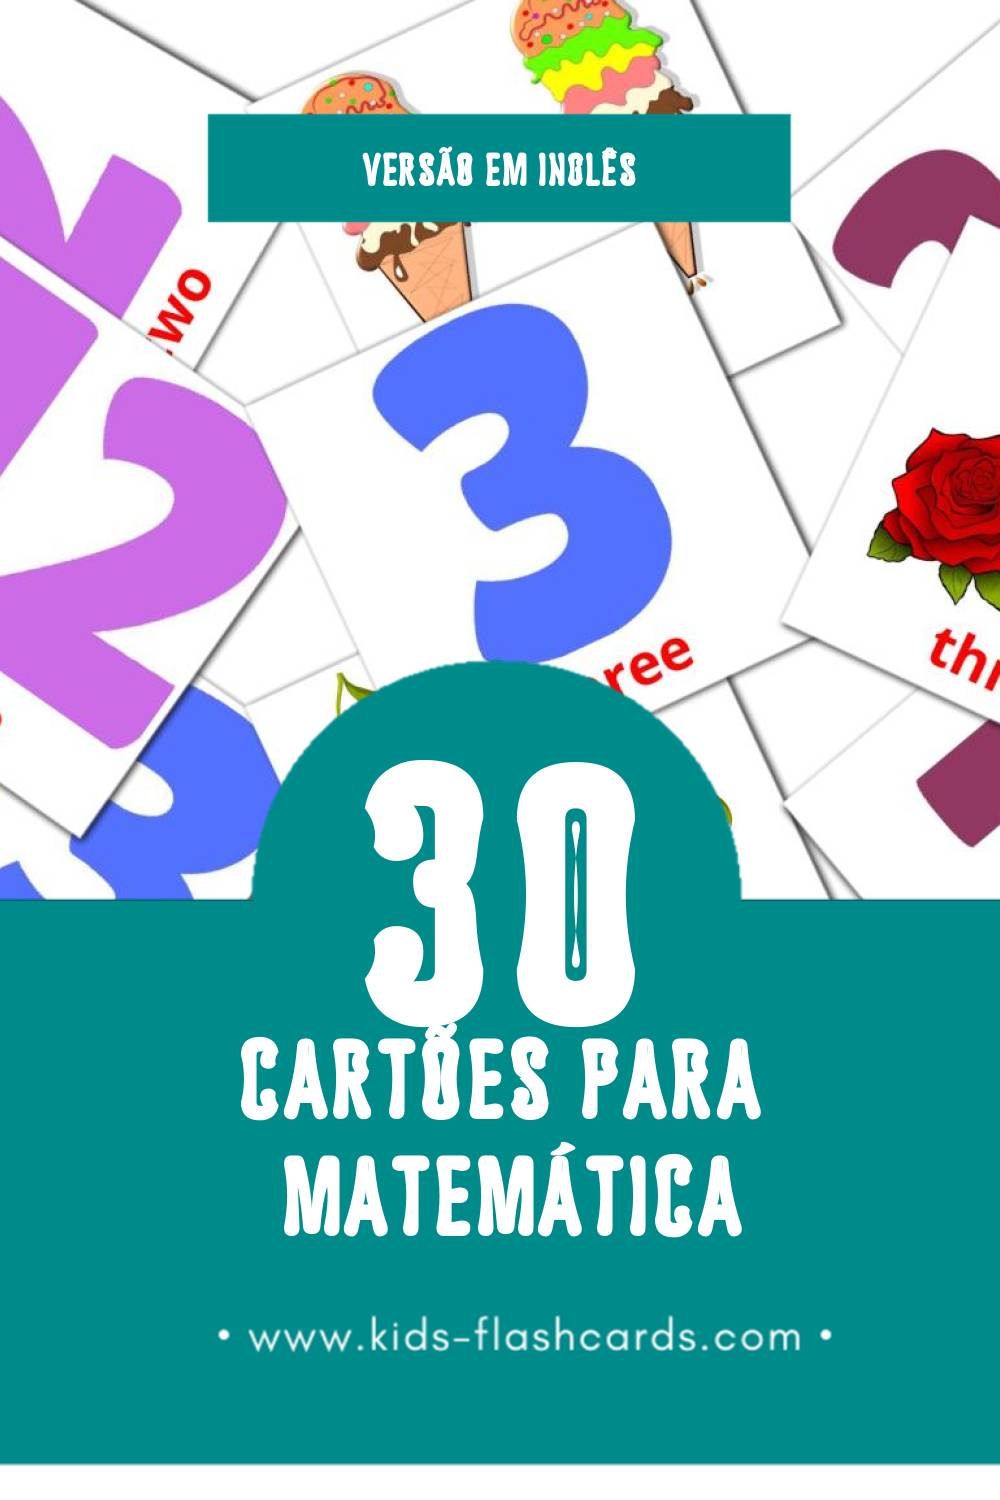 Flashcards de Math Visuais para Toddlers (30 cartões em Inglês)